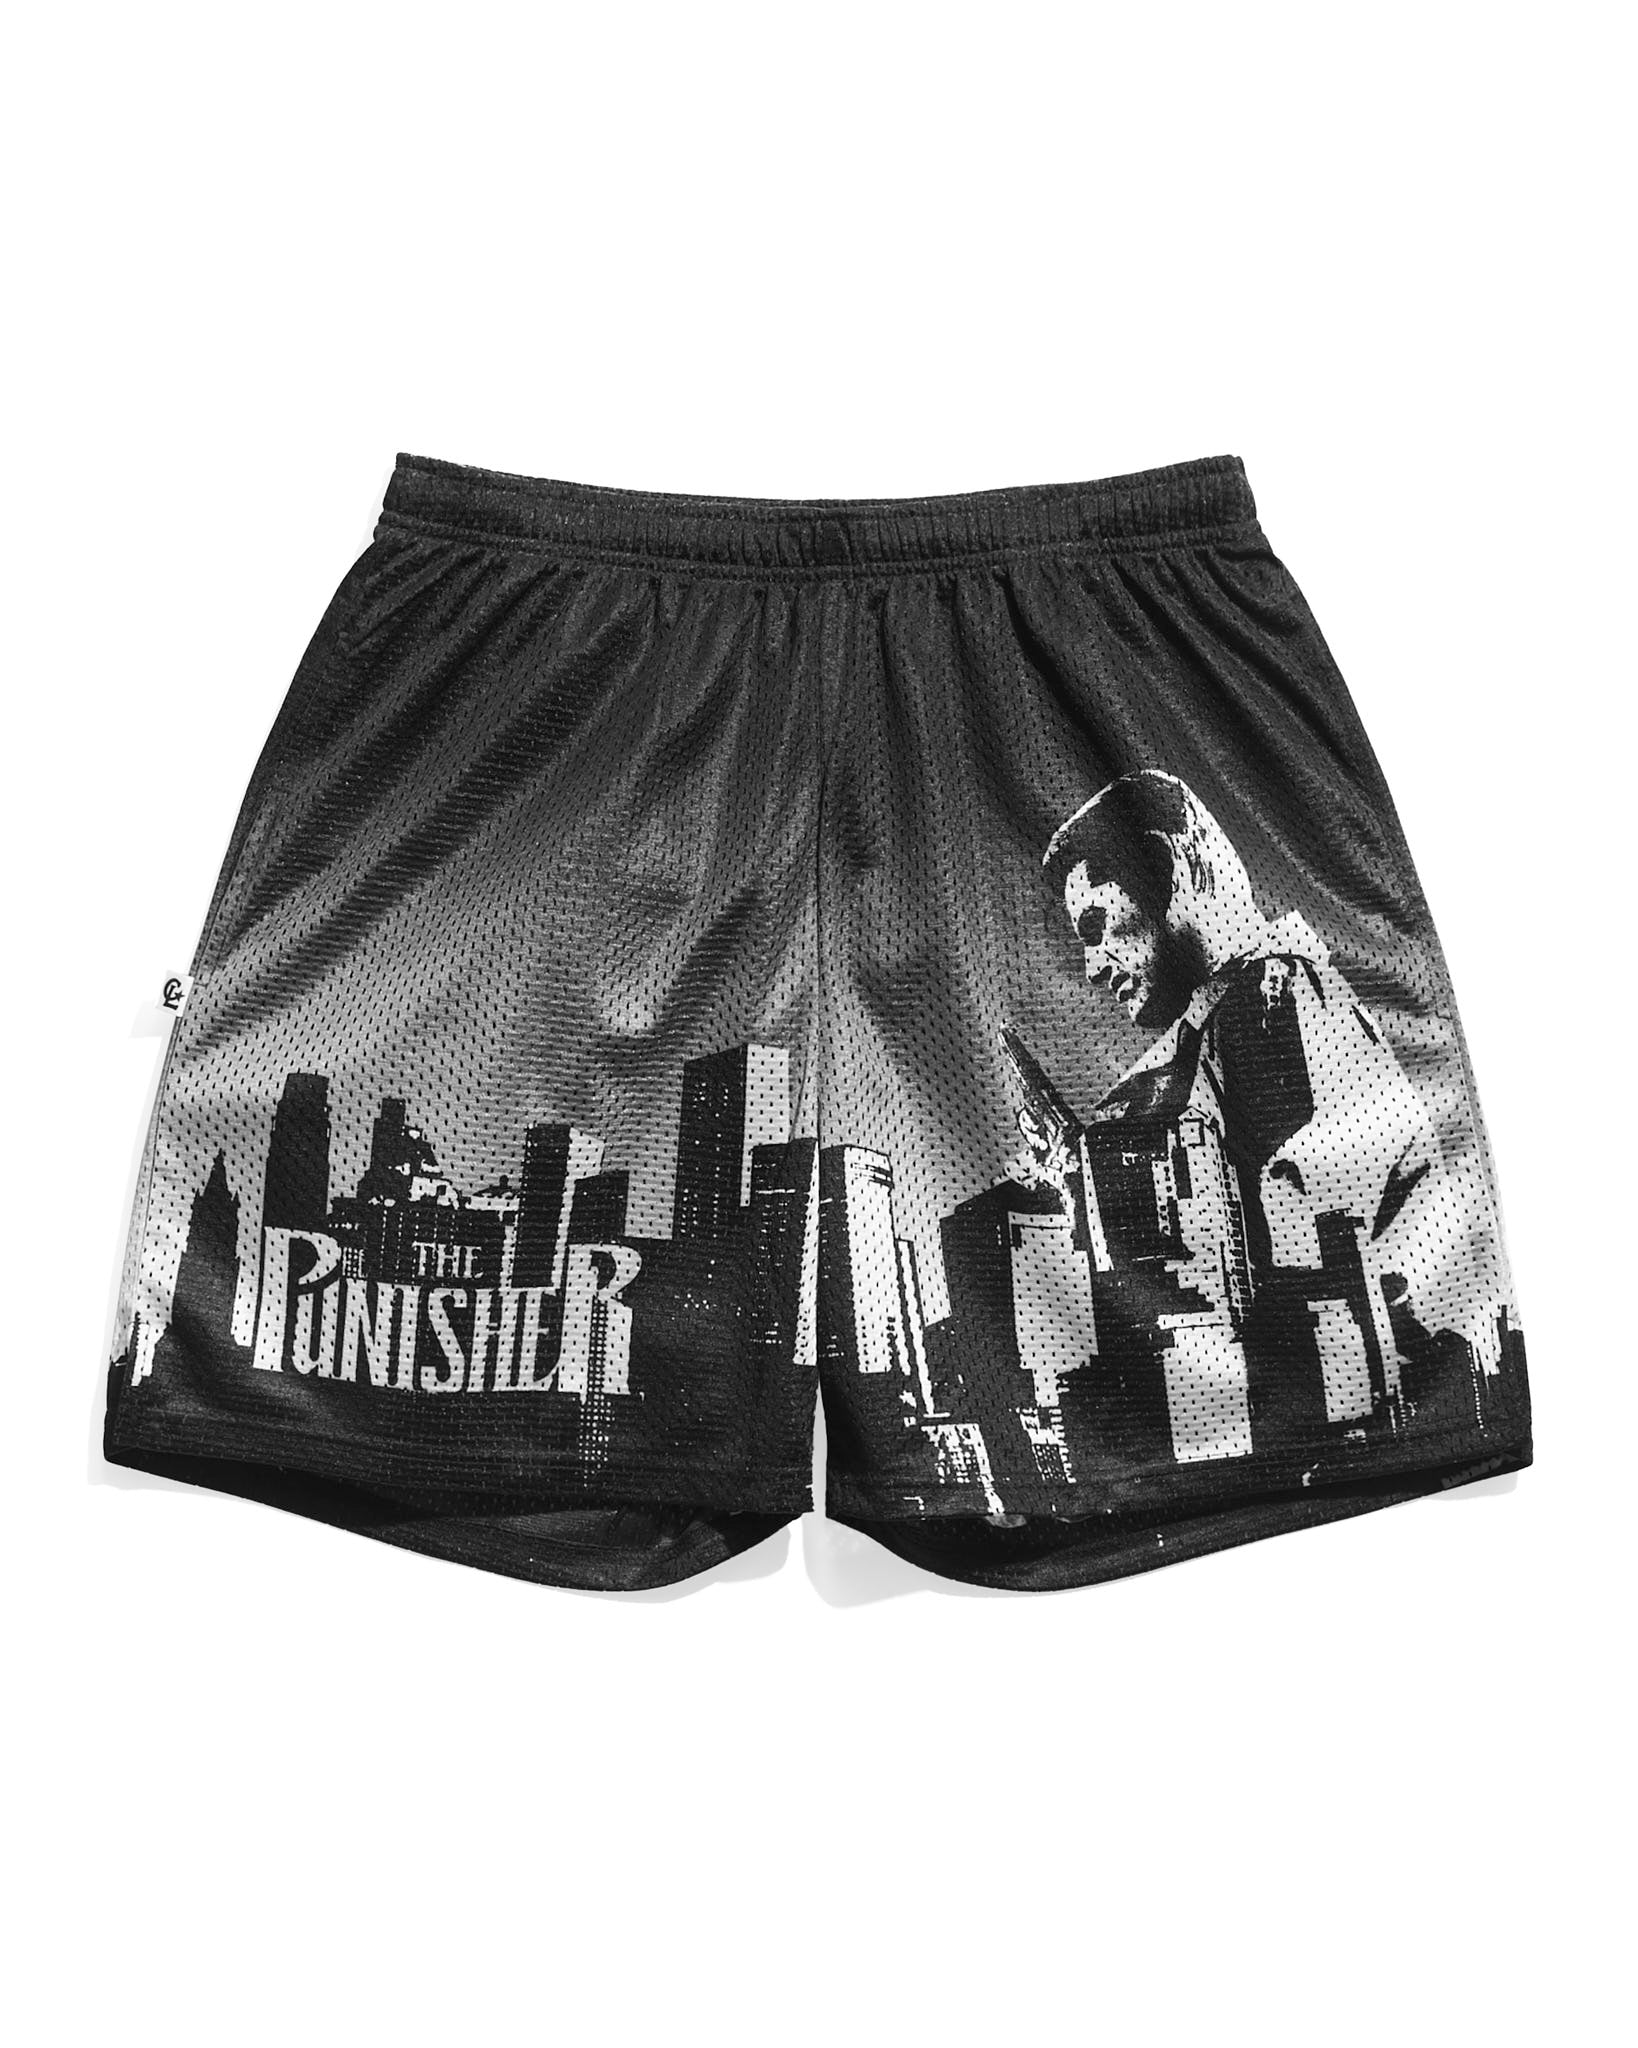 Punisher Skyline Retro Shorts